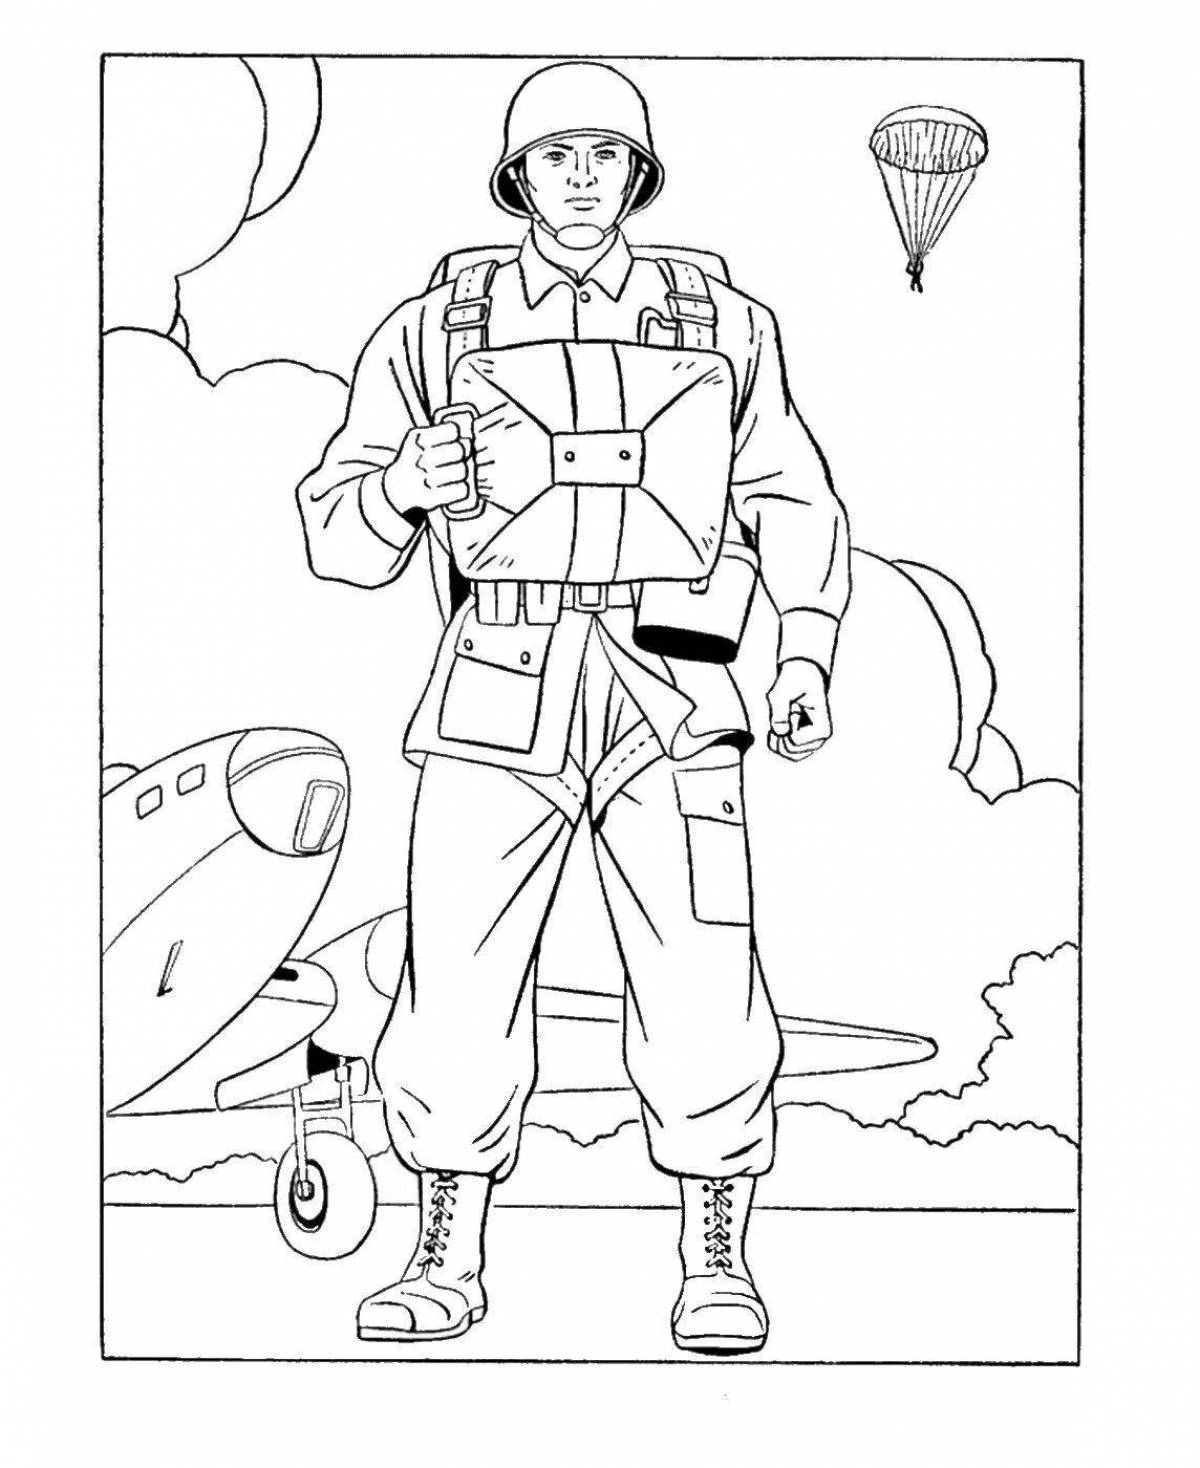 Dashing military tankman coloring page